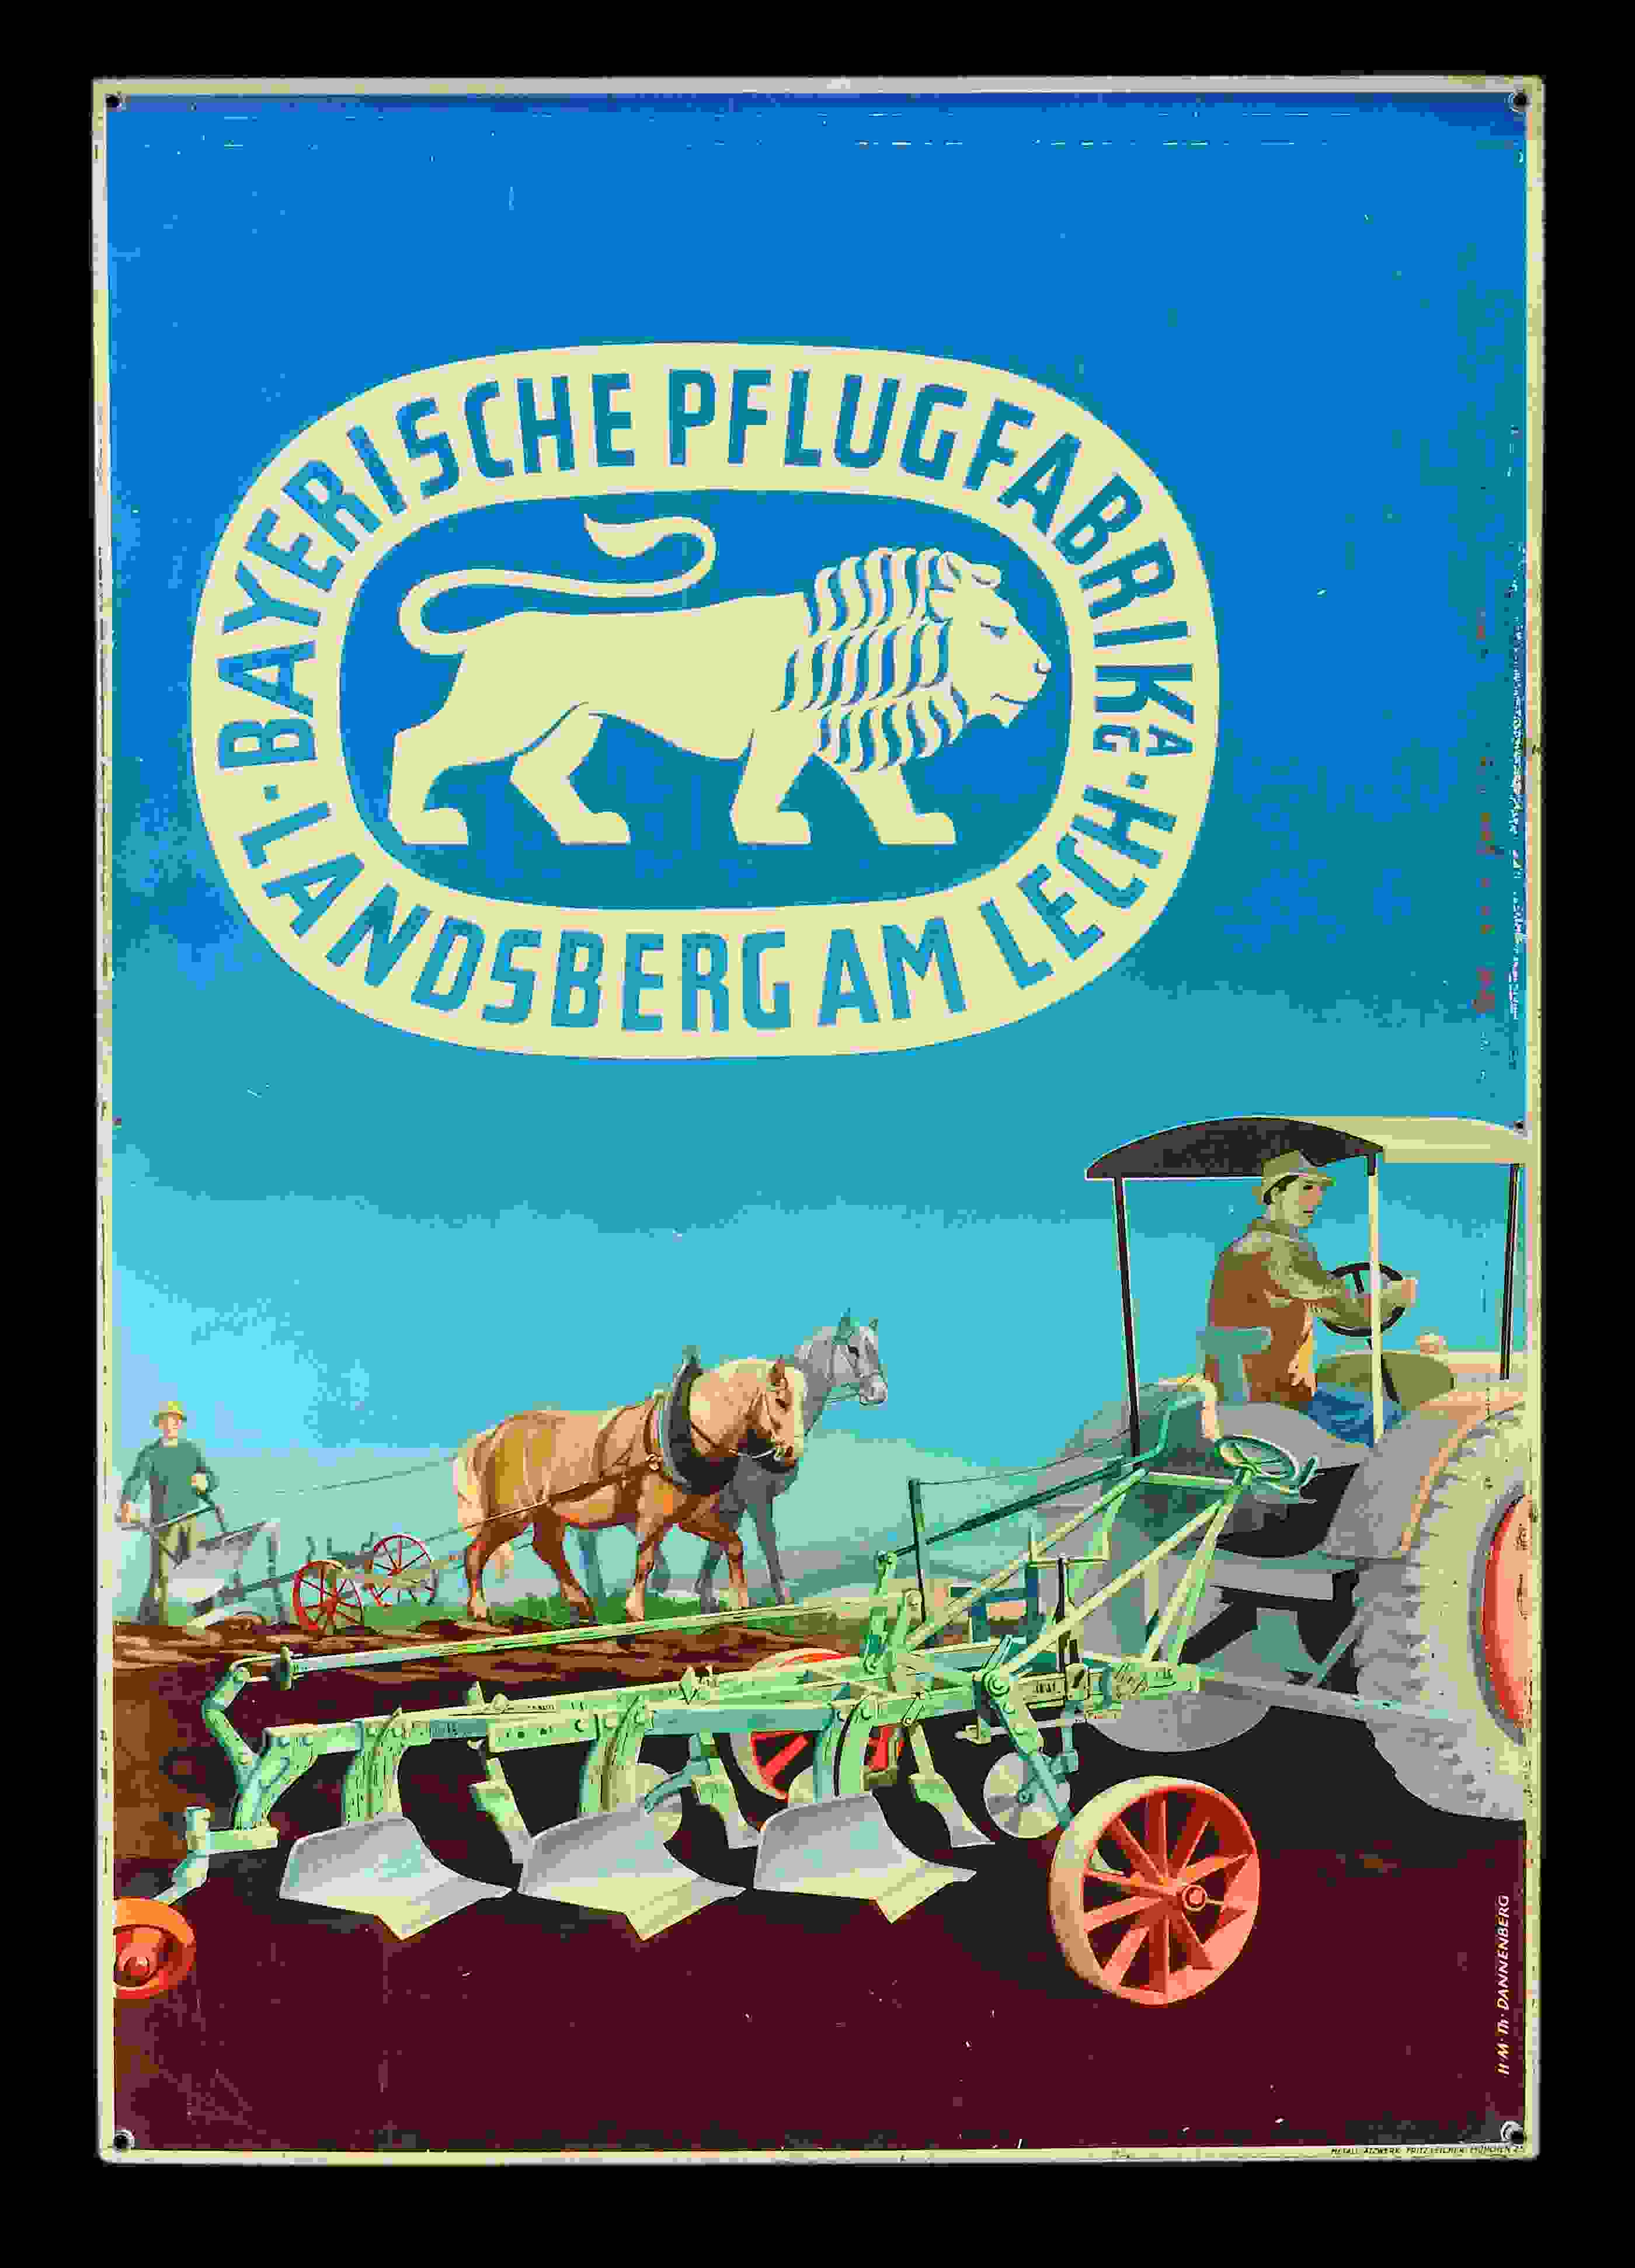 Bayerische Pflugfabrik  